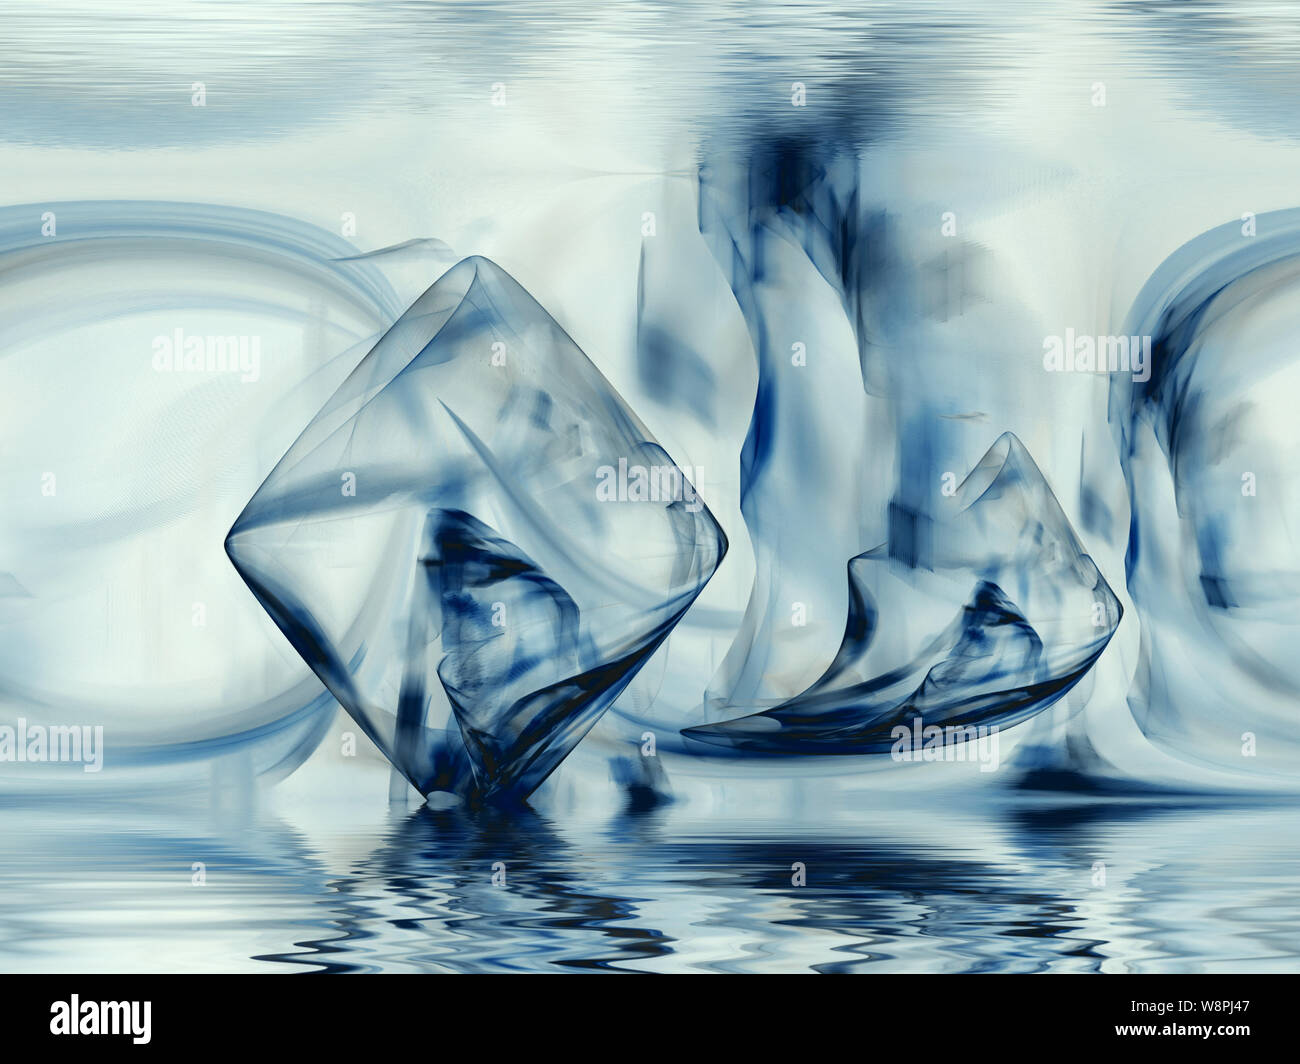 Fraktale Wasserwelten - Waterworld Stock Photo